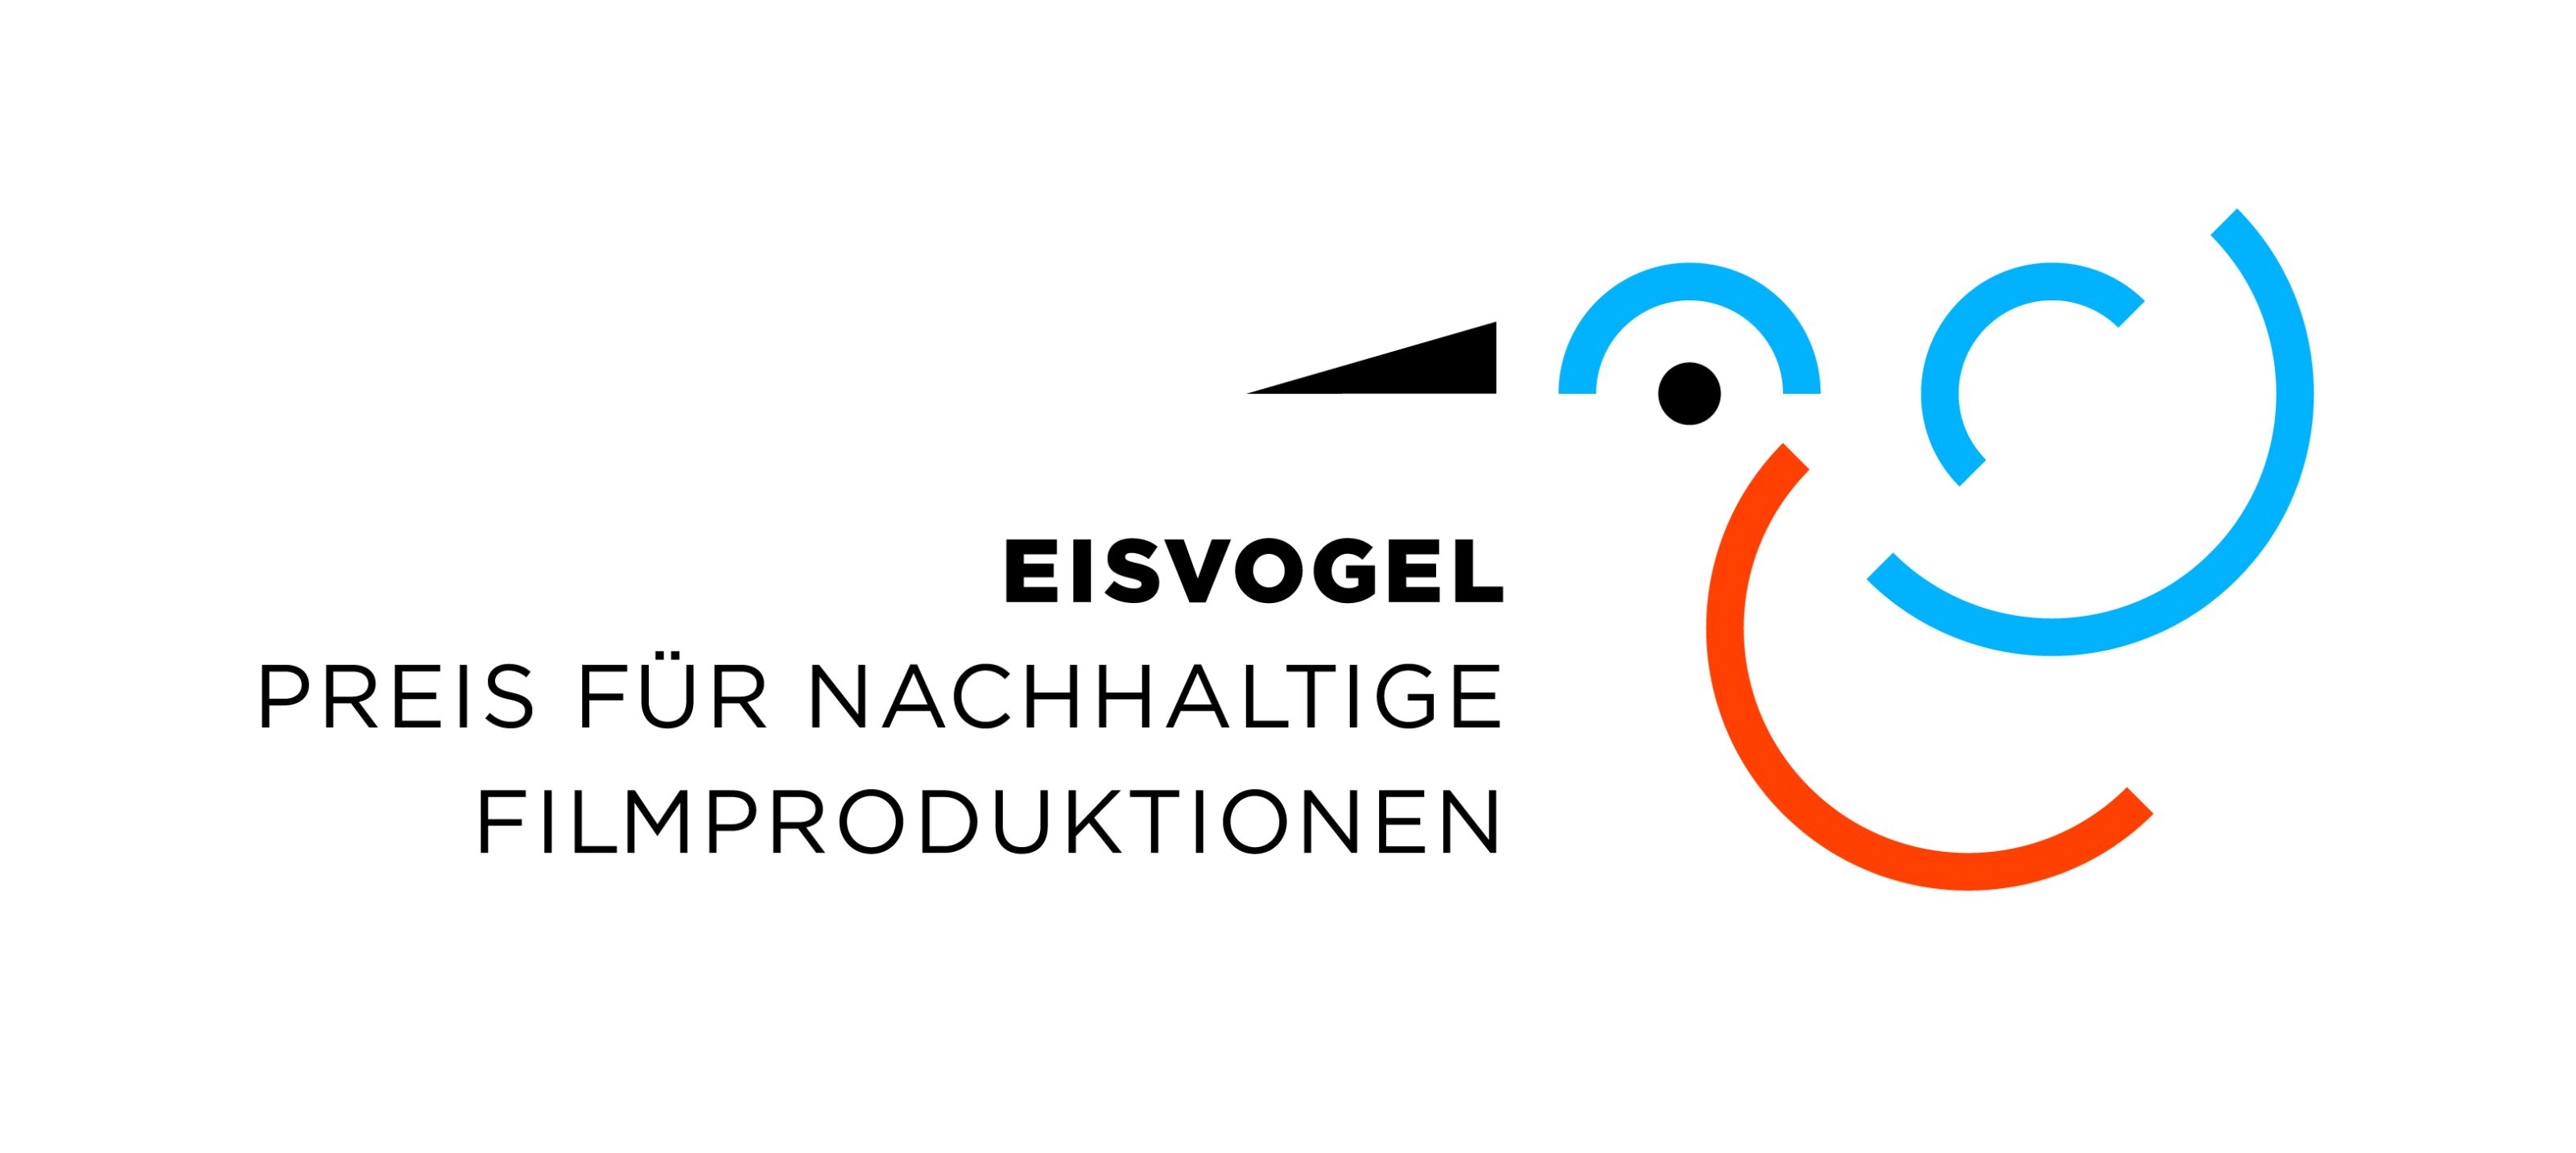 Eisvogel-Preis für nachhaltige Filmproduktionen